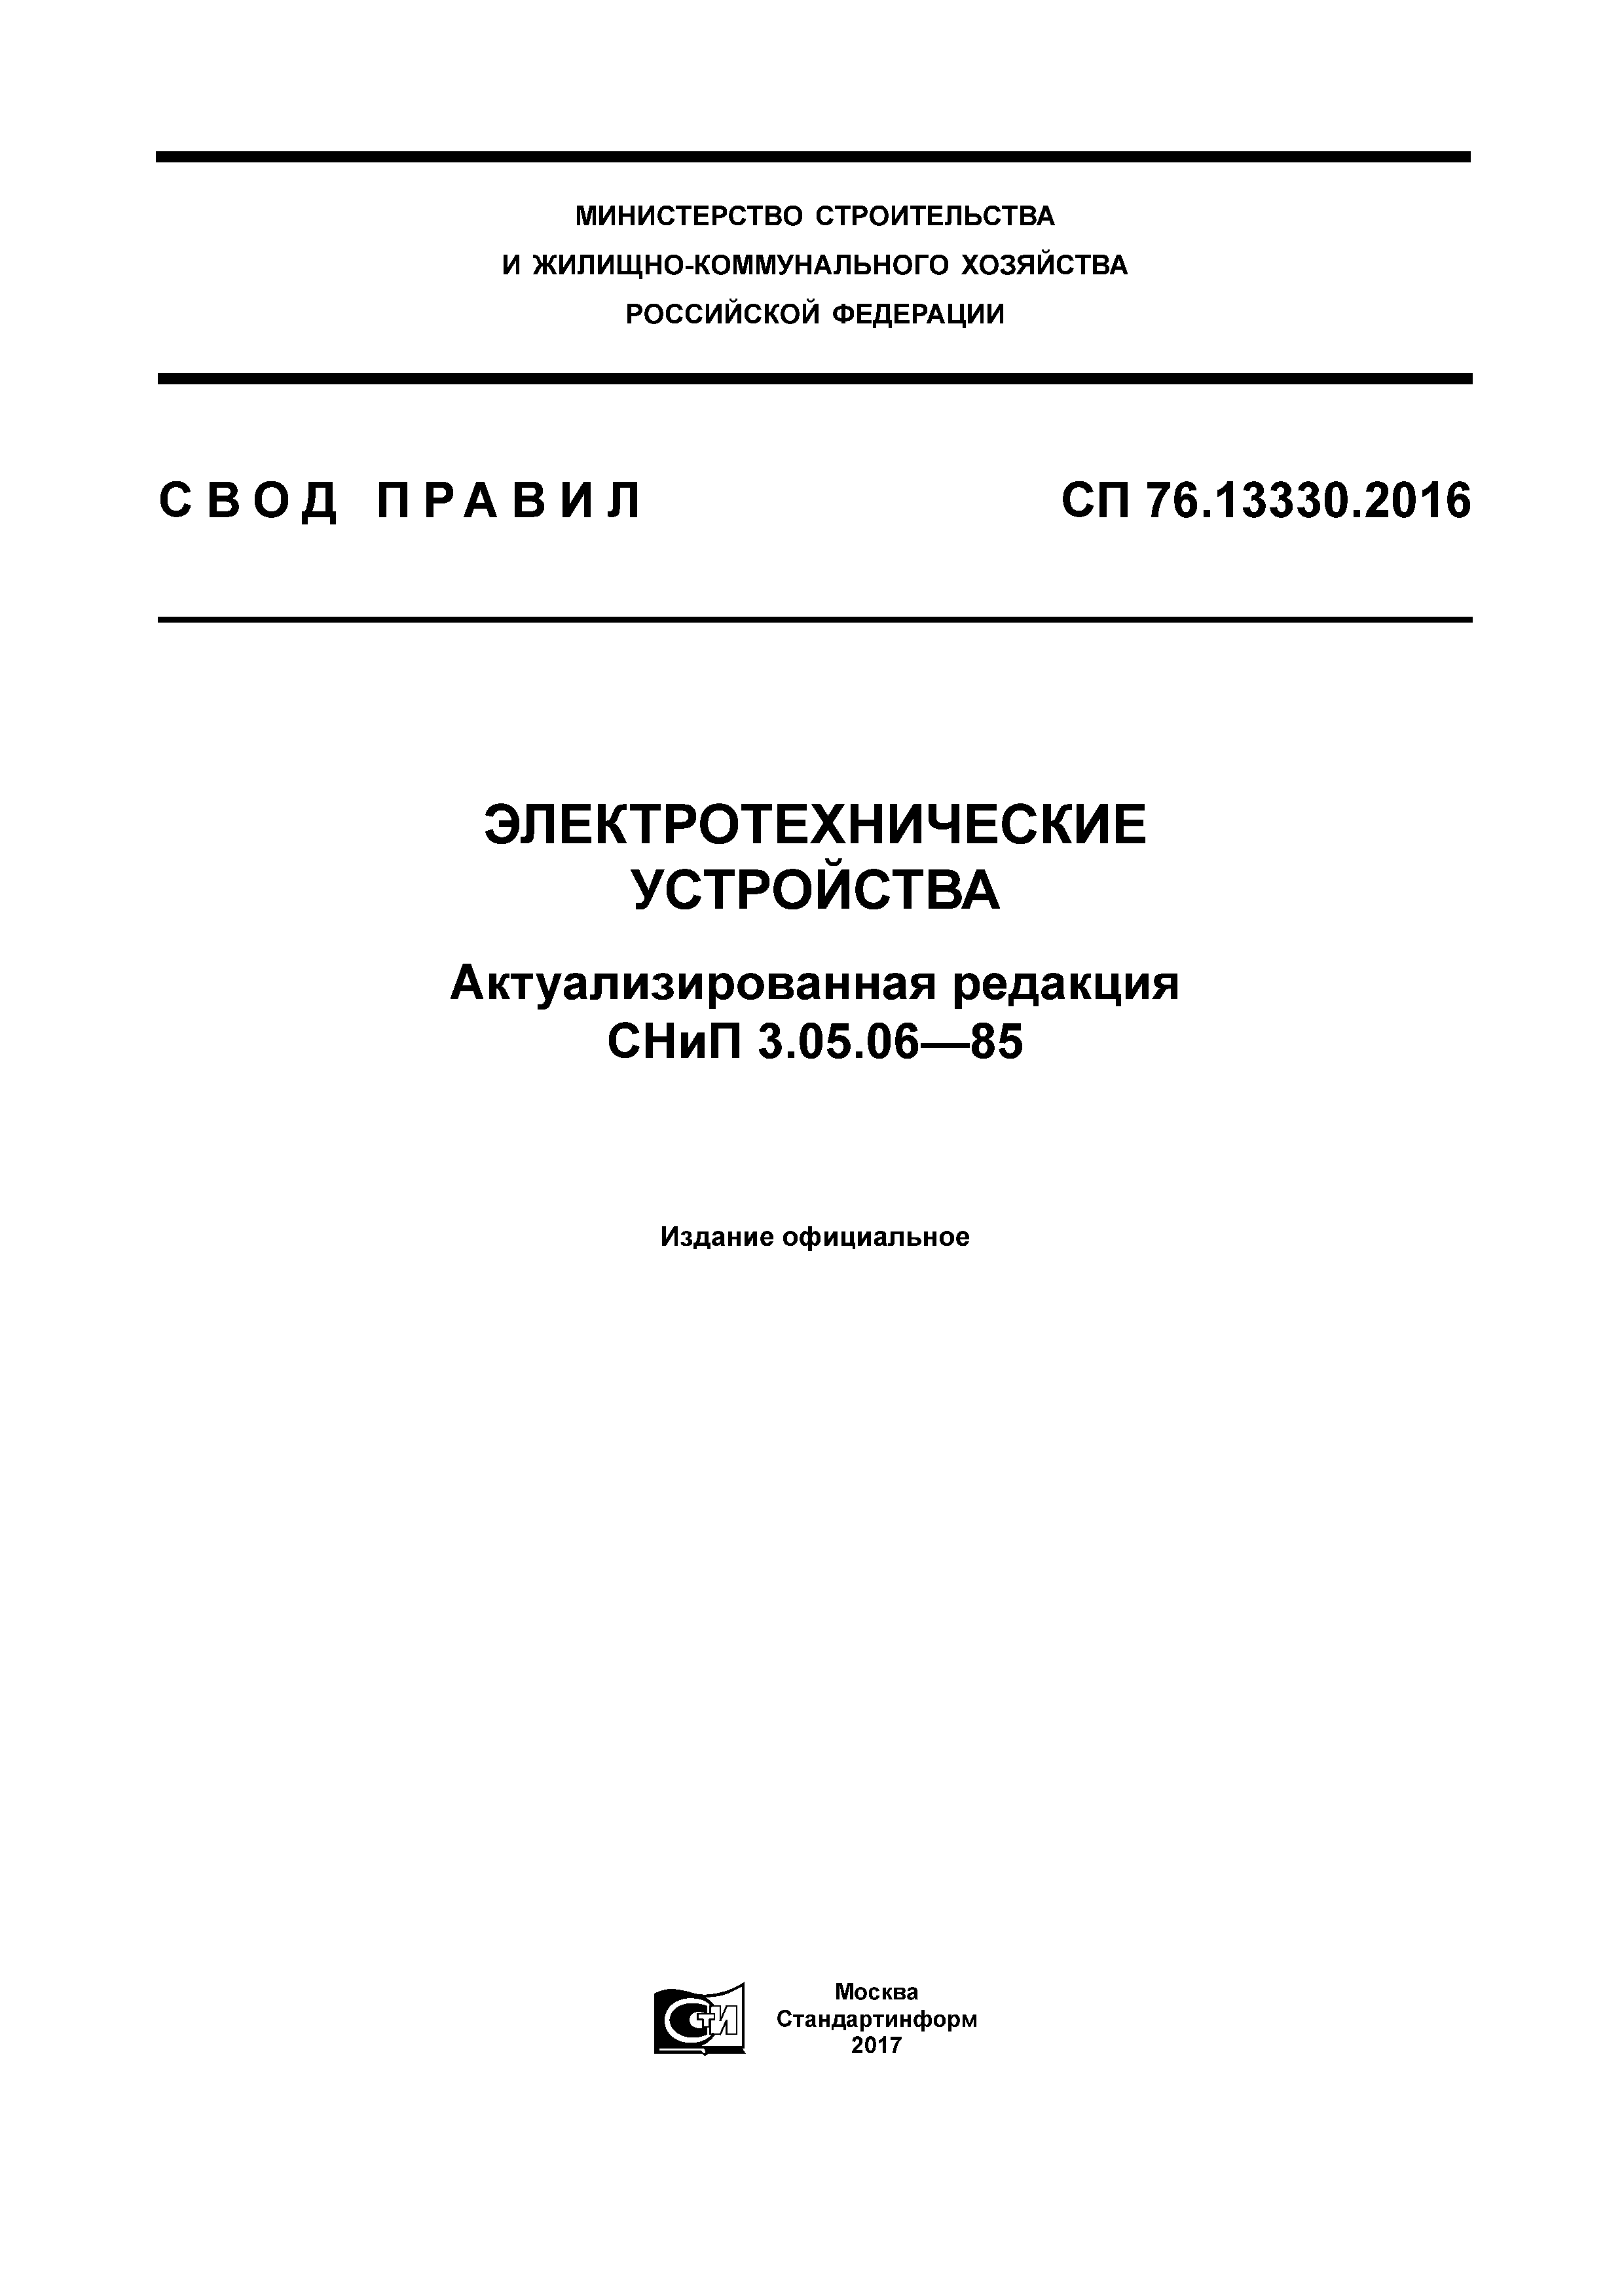 СП 76.13330.2016